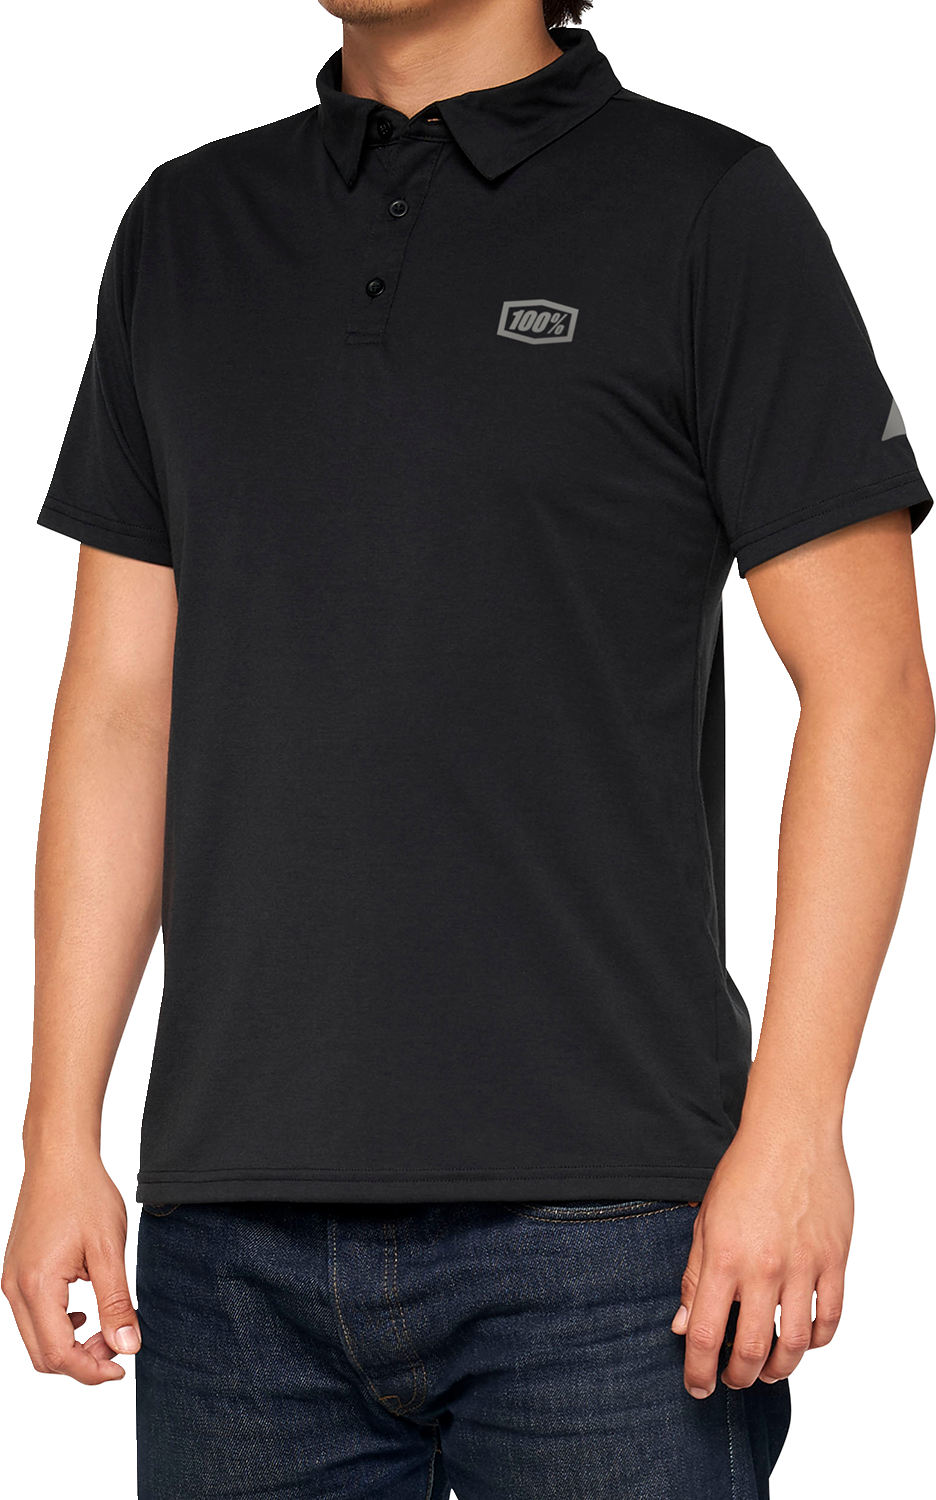 100% Corpo Polo Shirt - Black/Gray - XL 35019-057-13